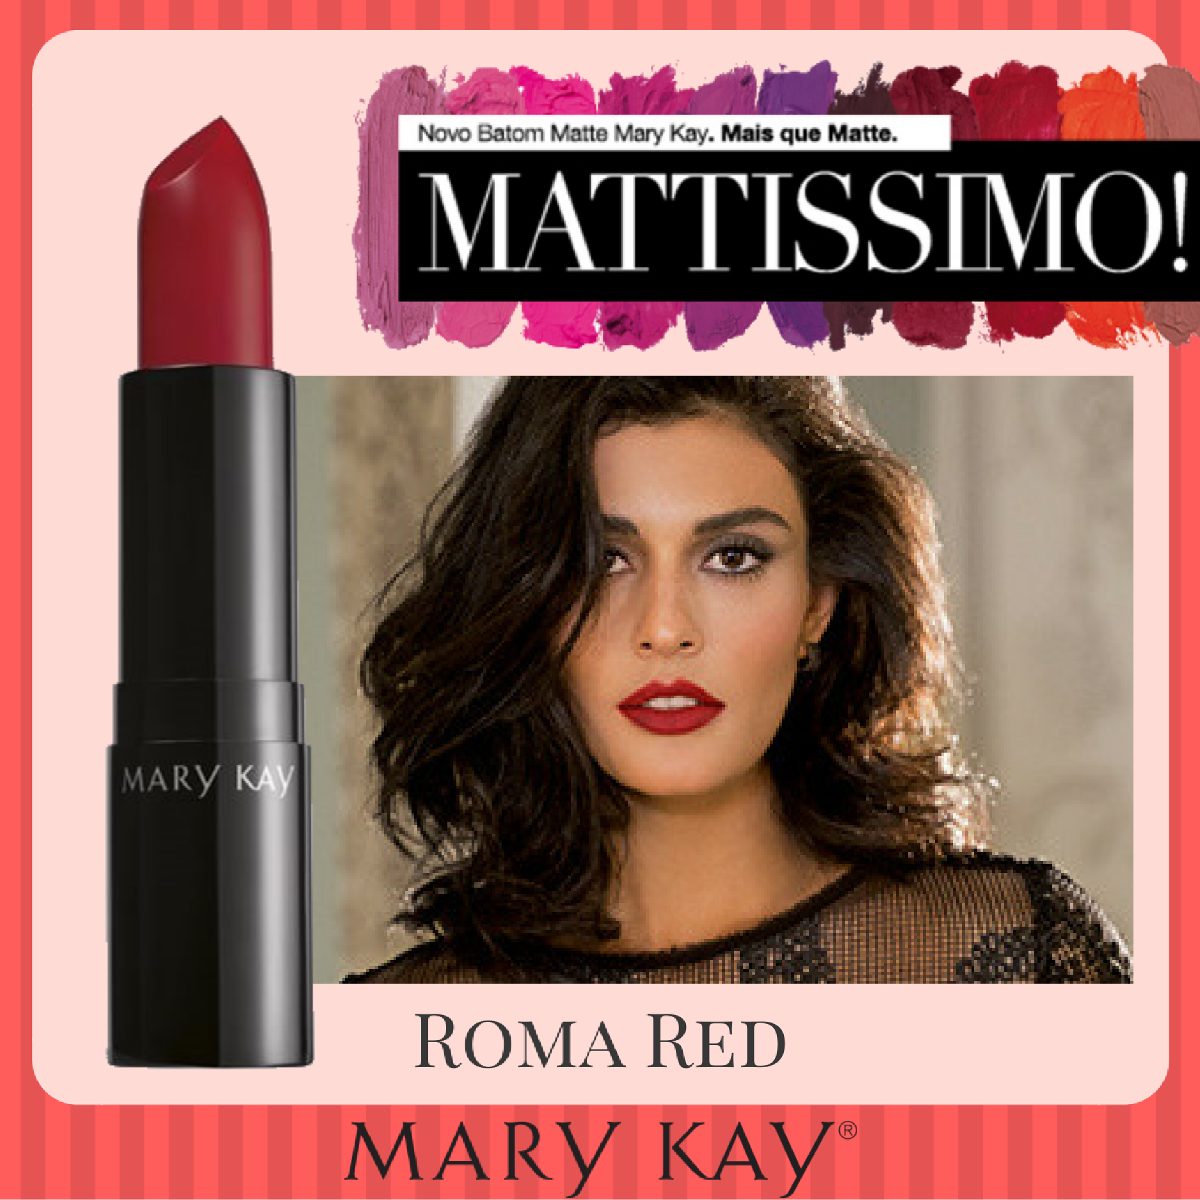 Batom Mary Kay Matissimo - Red Amore - Lançamento - R$ 41 